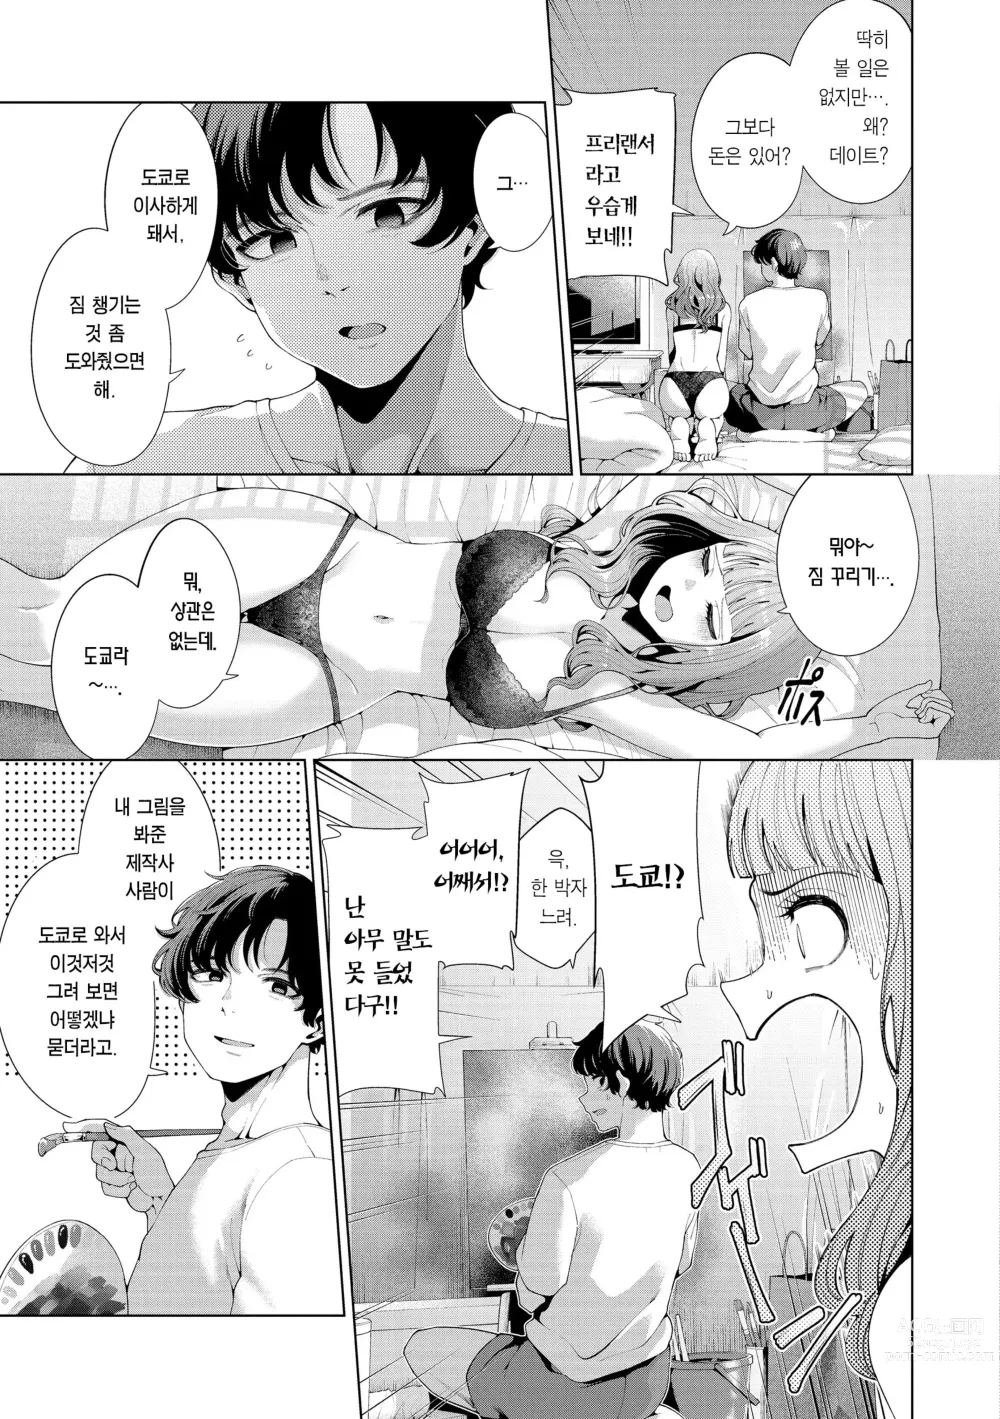 Page 7 of manga 나로 물들이고 싶어